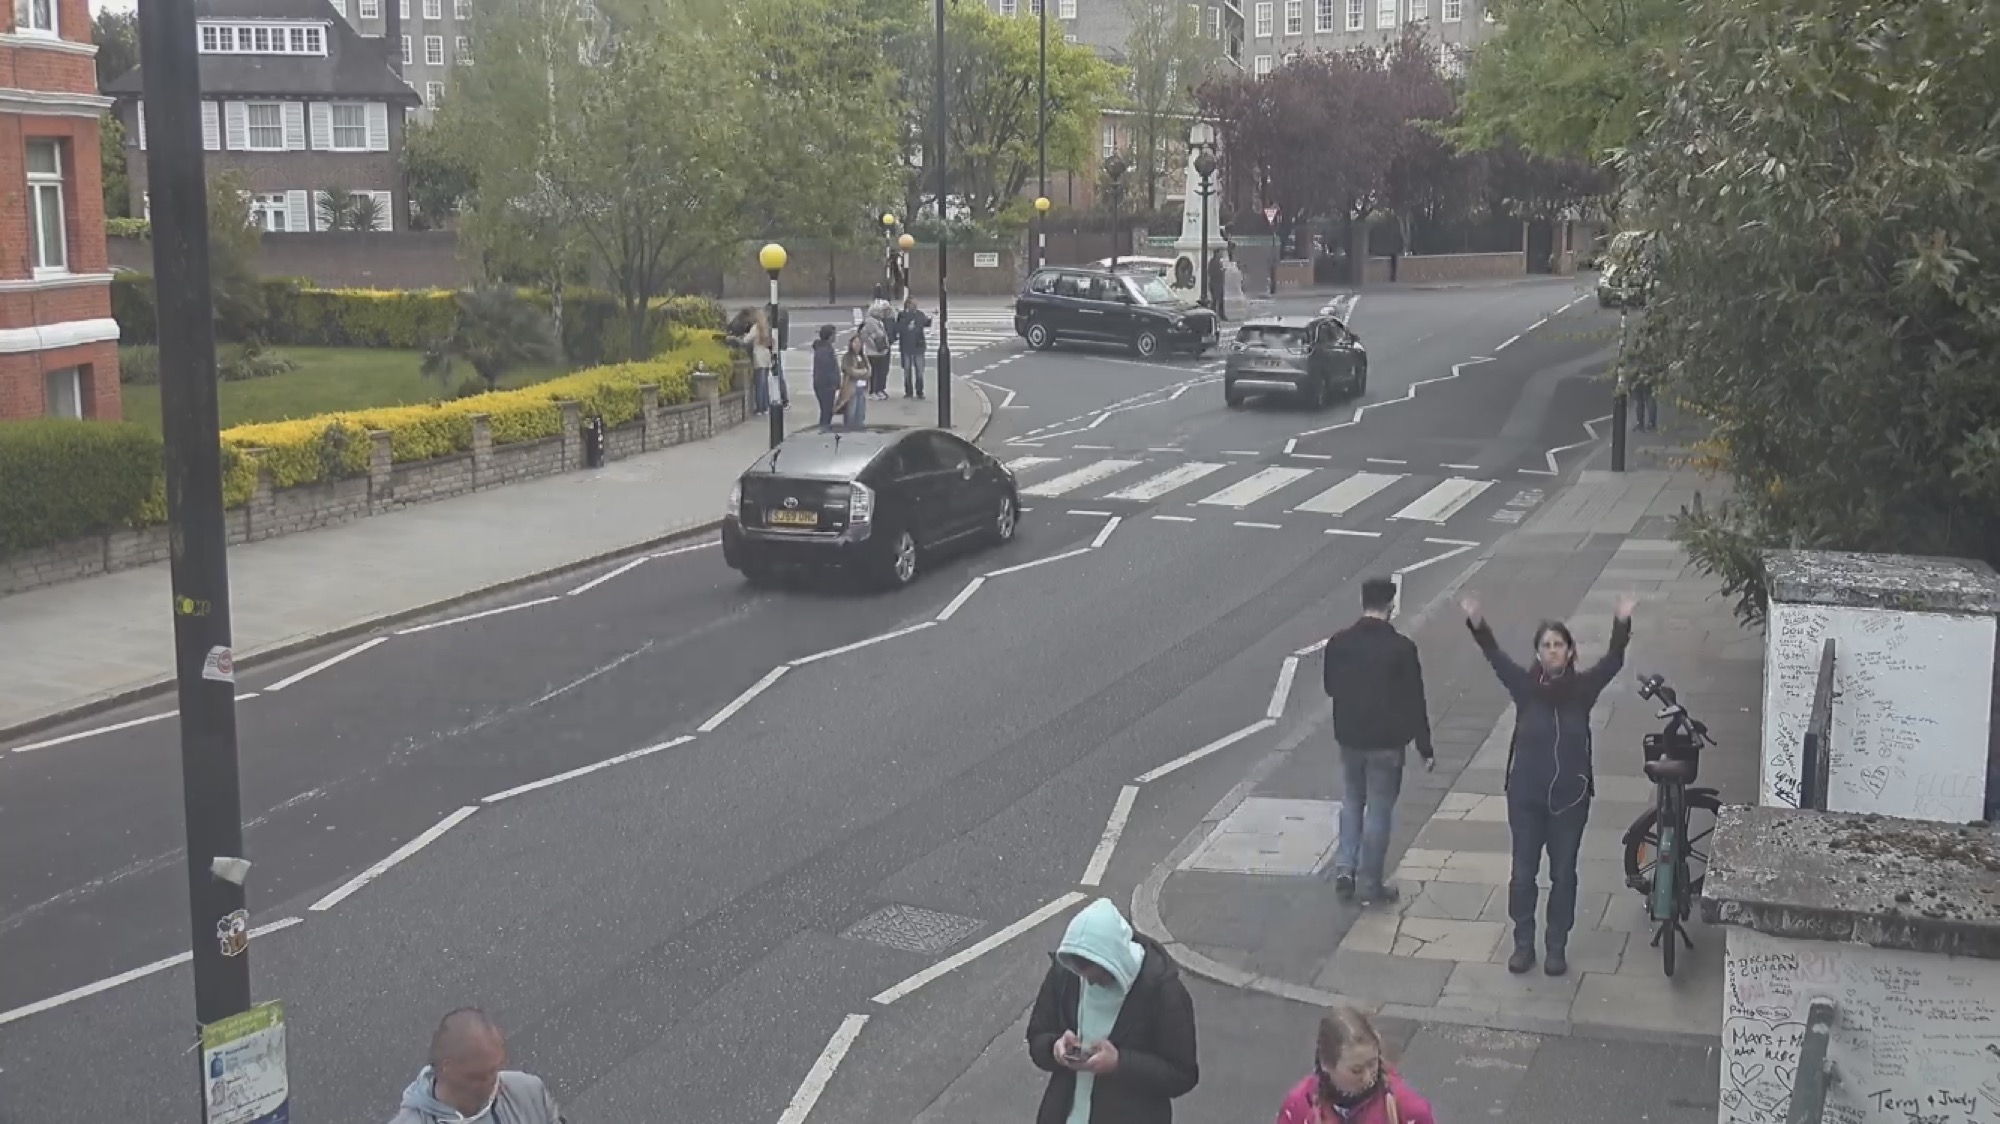 Webcam-Screenshot des berühmten Zebrastreifens vor den Abbey Road Studios, 4 Autos sind unterwegs, Menschen warten darauf, die Straße zu überqueren, im Hintergrund eine Statue, rechts vorne neben einem Fahrrad winkt eine Person (ich) in die Kamera